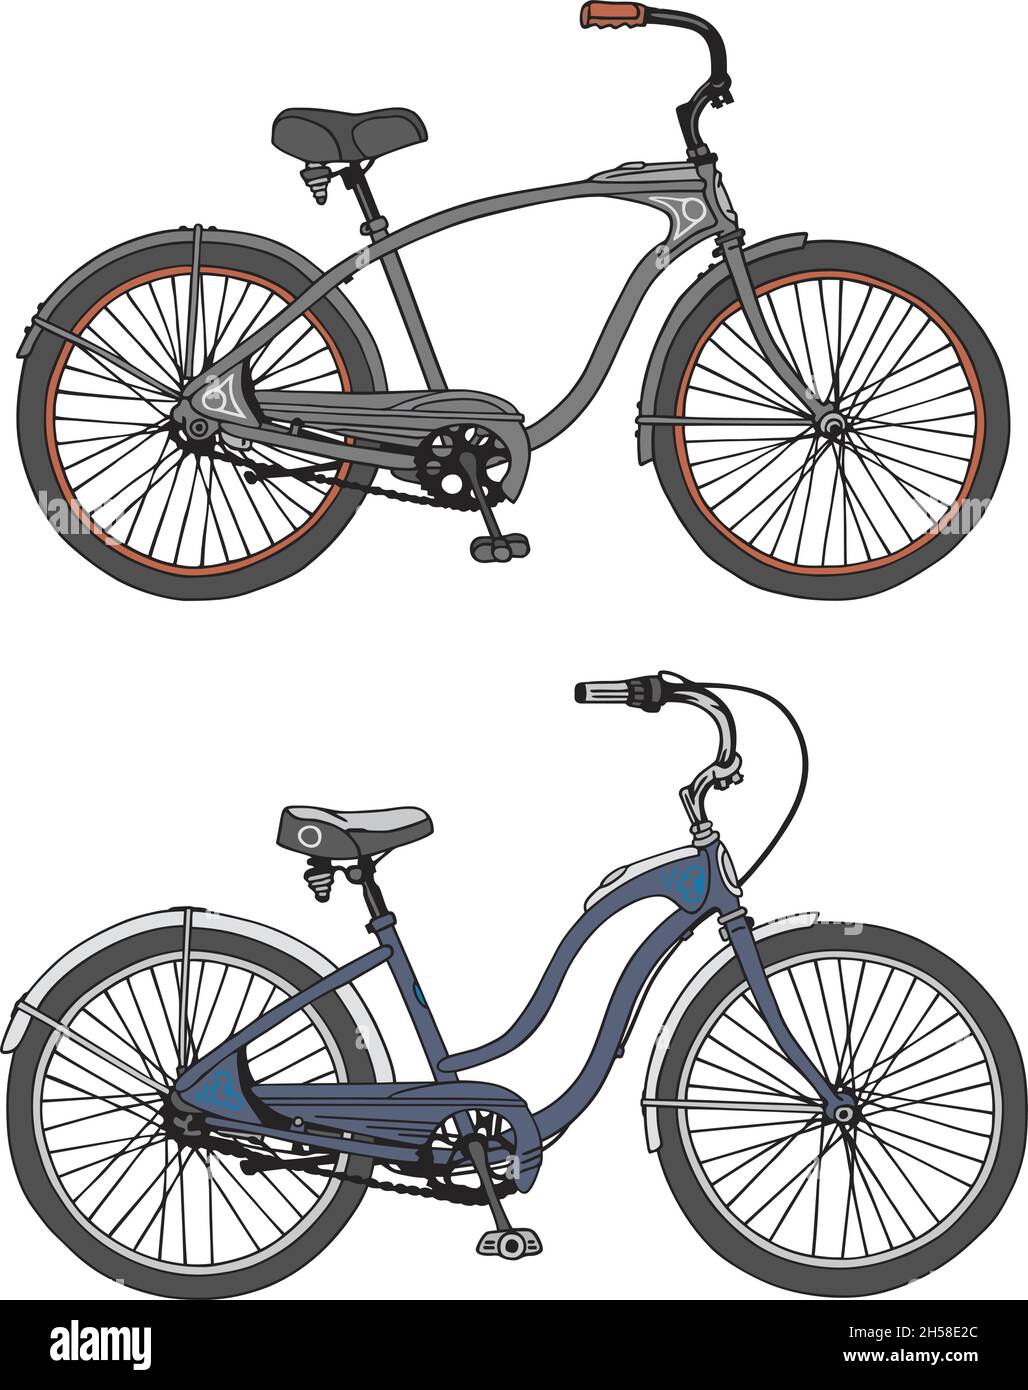 Il disegno a mano vettorizzato di due biciclette retrò Illustrazione Vettoriale